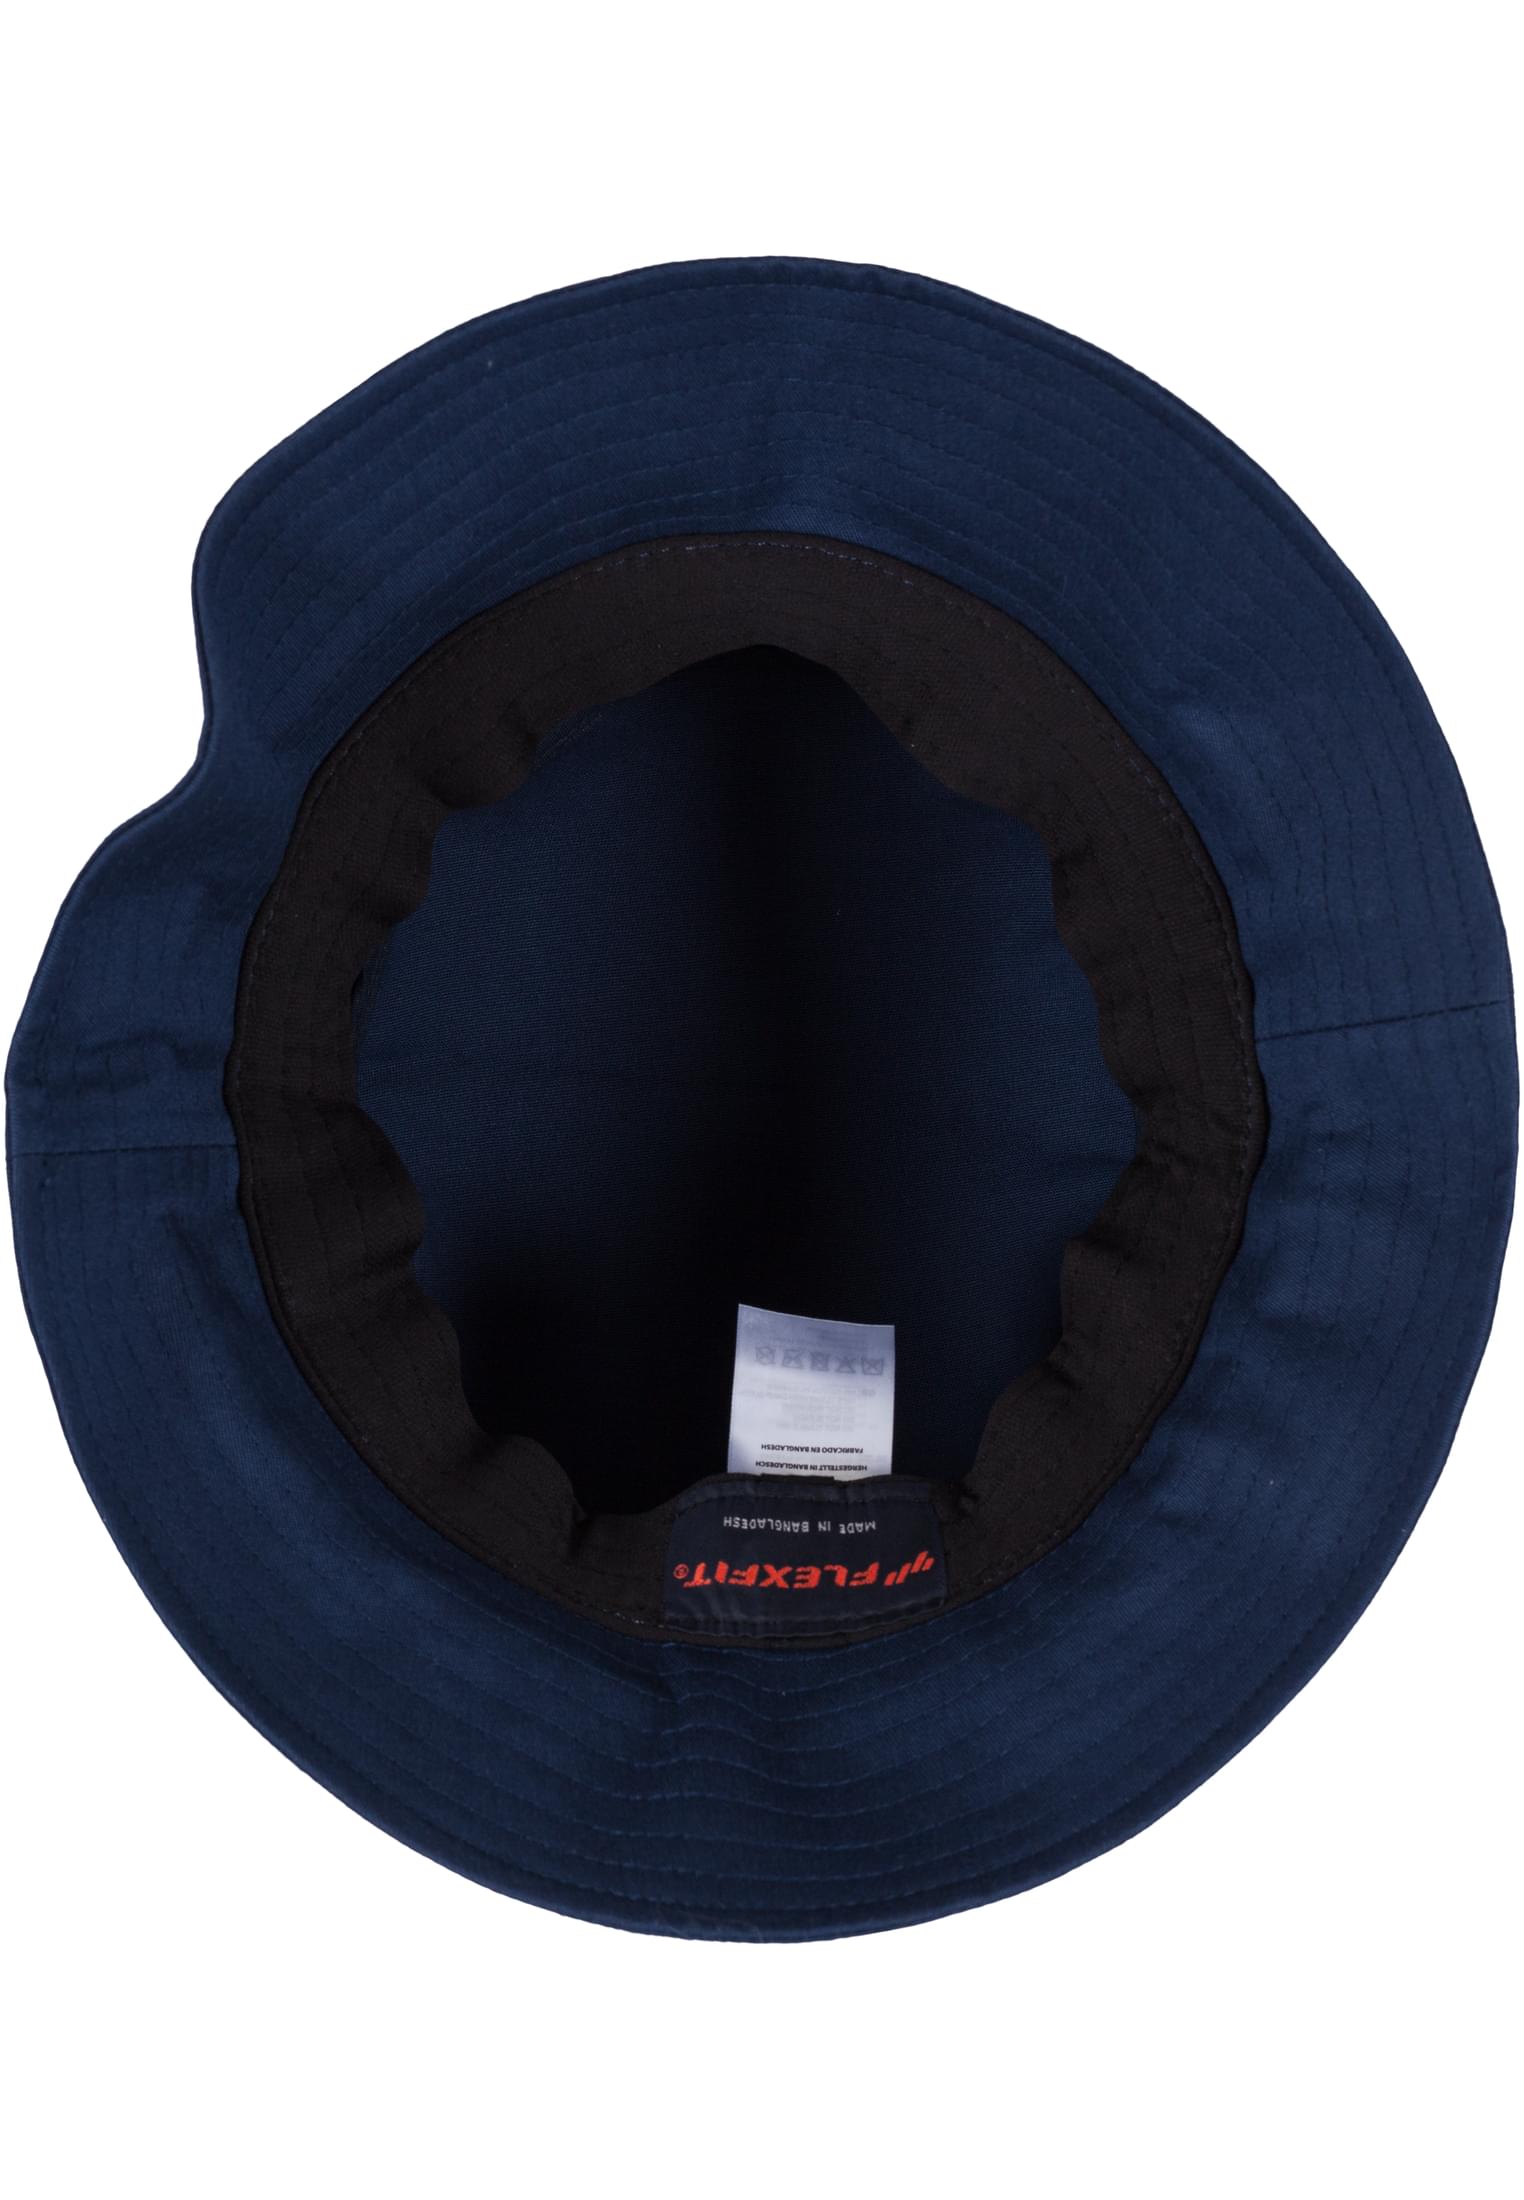 Flexfit Cotton Twill Hat-5003 Bucket